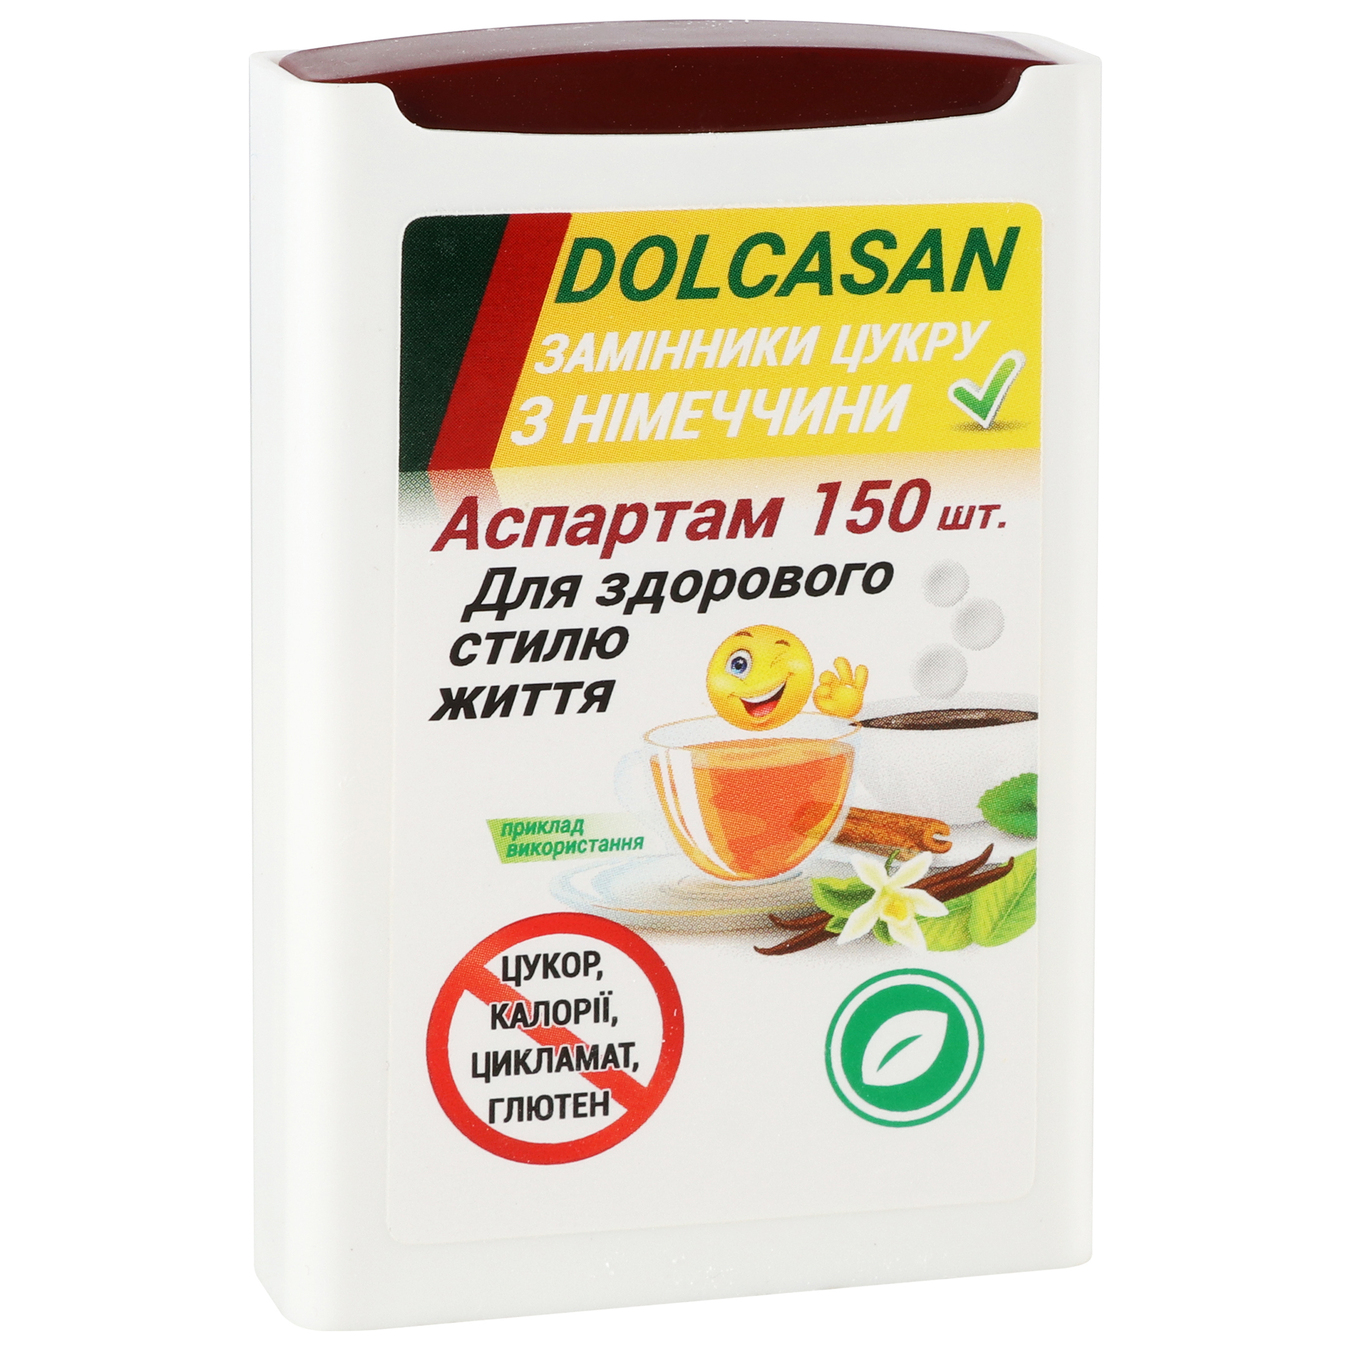 Sugar substitute Dolcasan aspartame 150pcs. 2